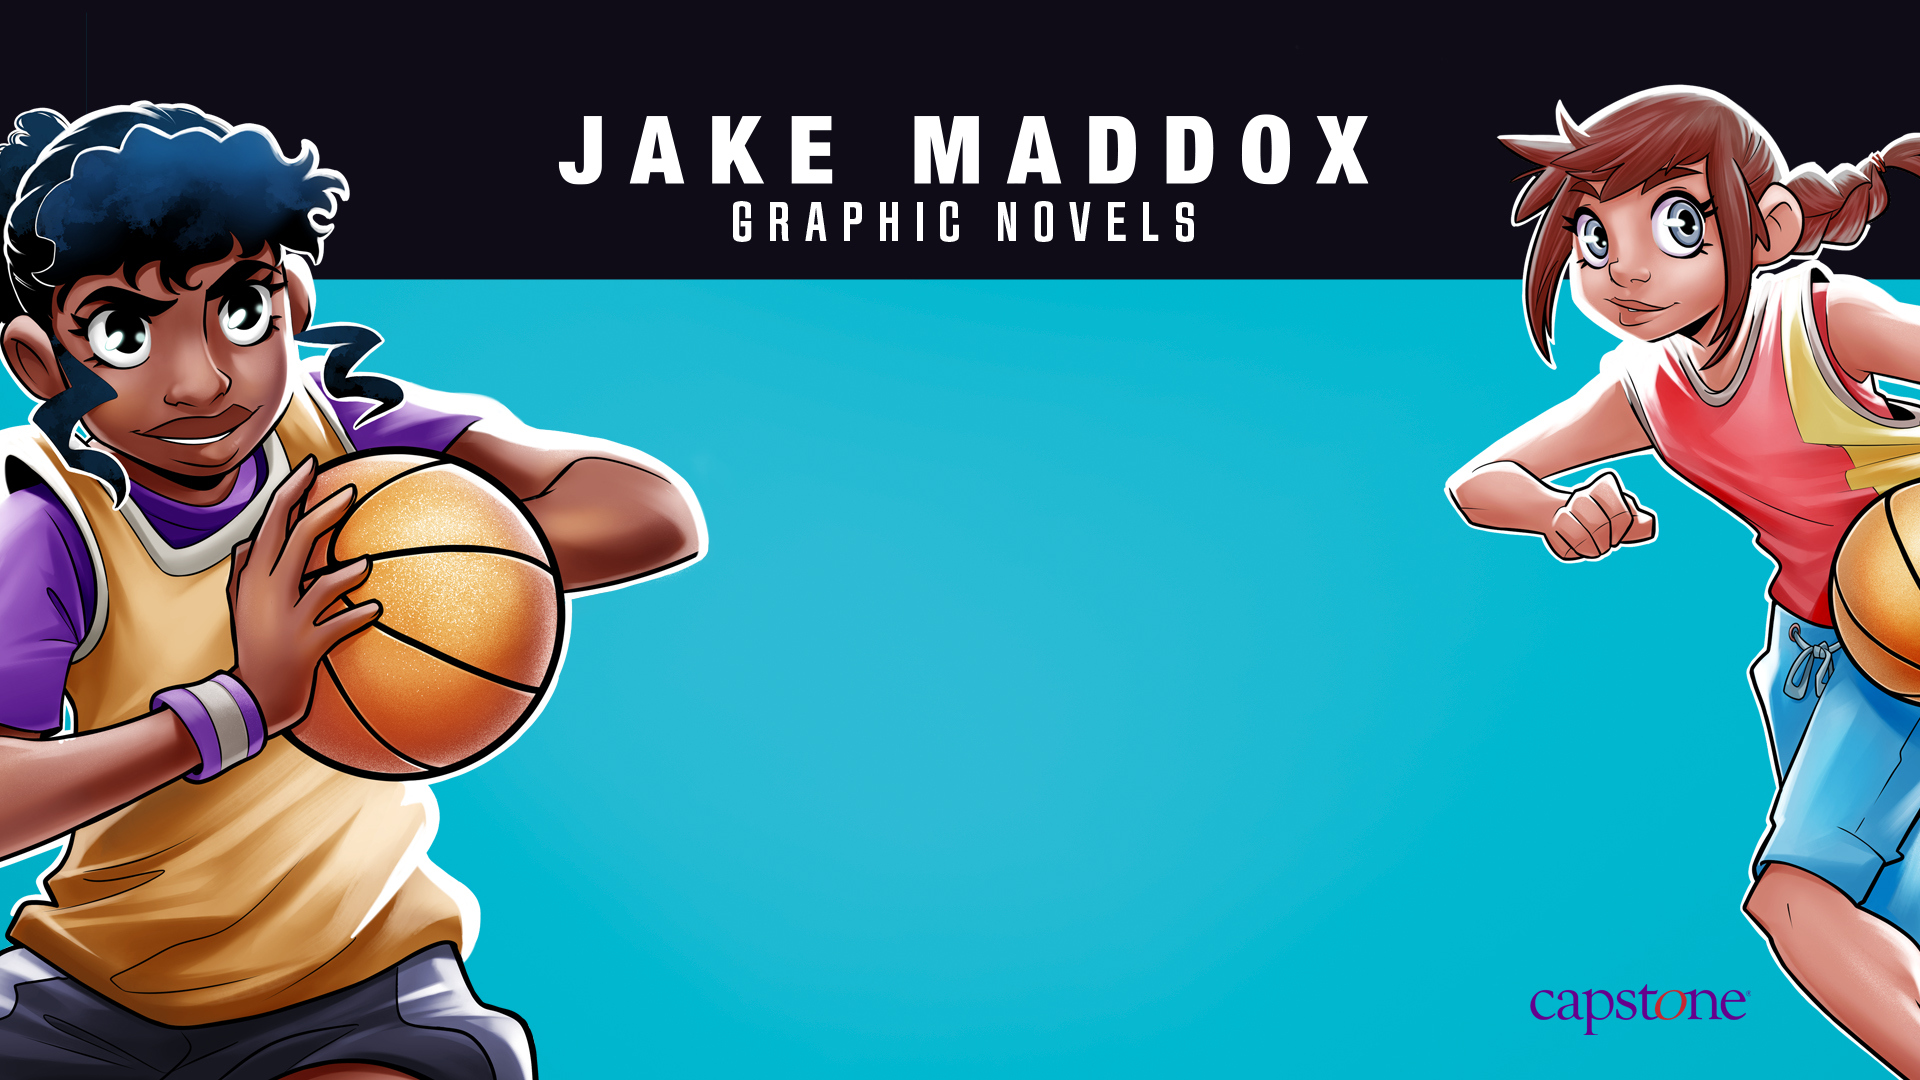 Jake Maddox